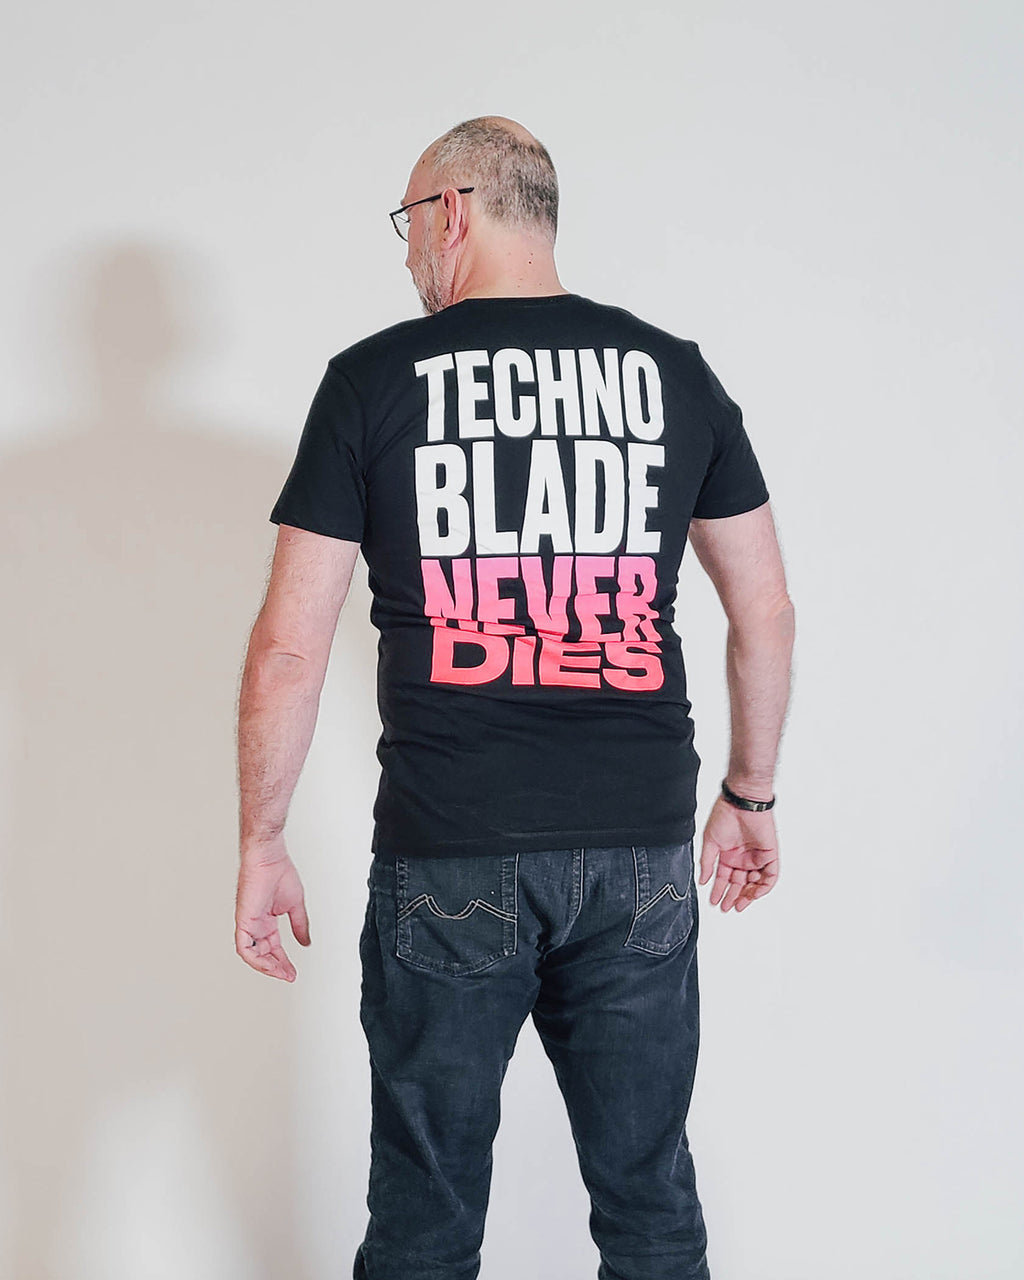 Technoblade never Dies | Sticker